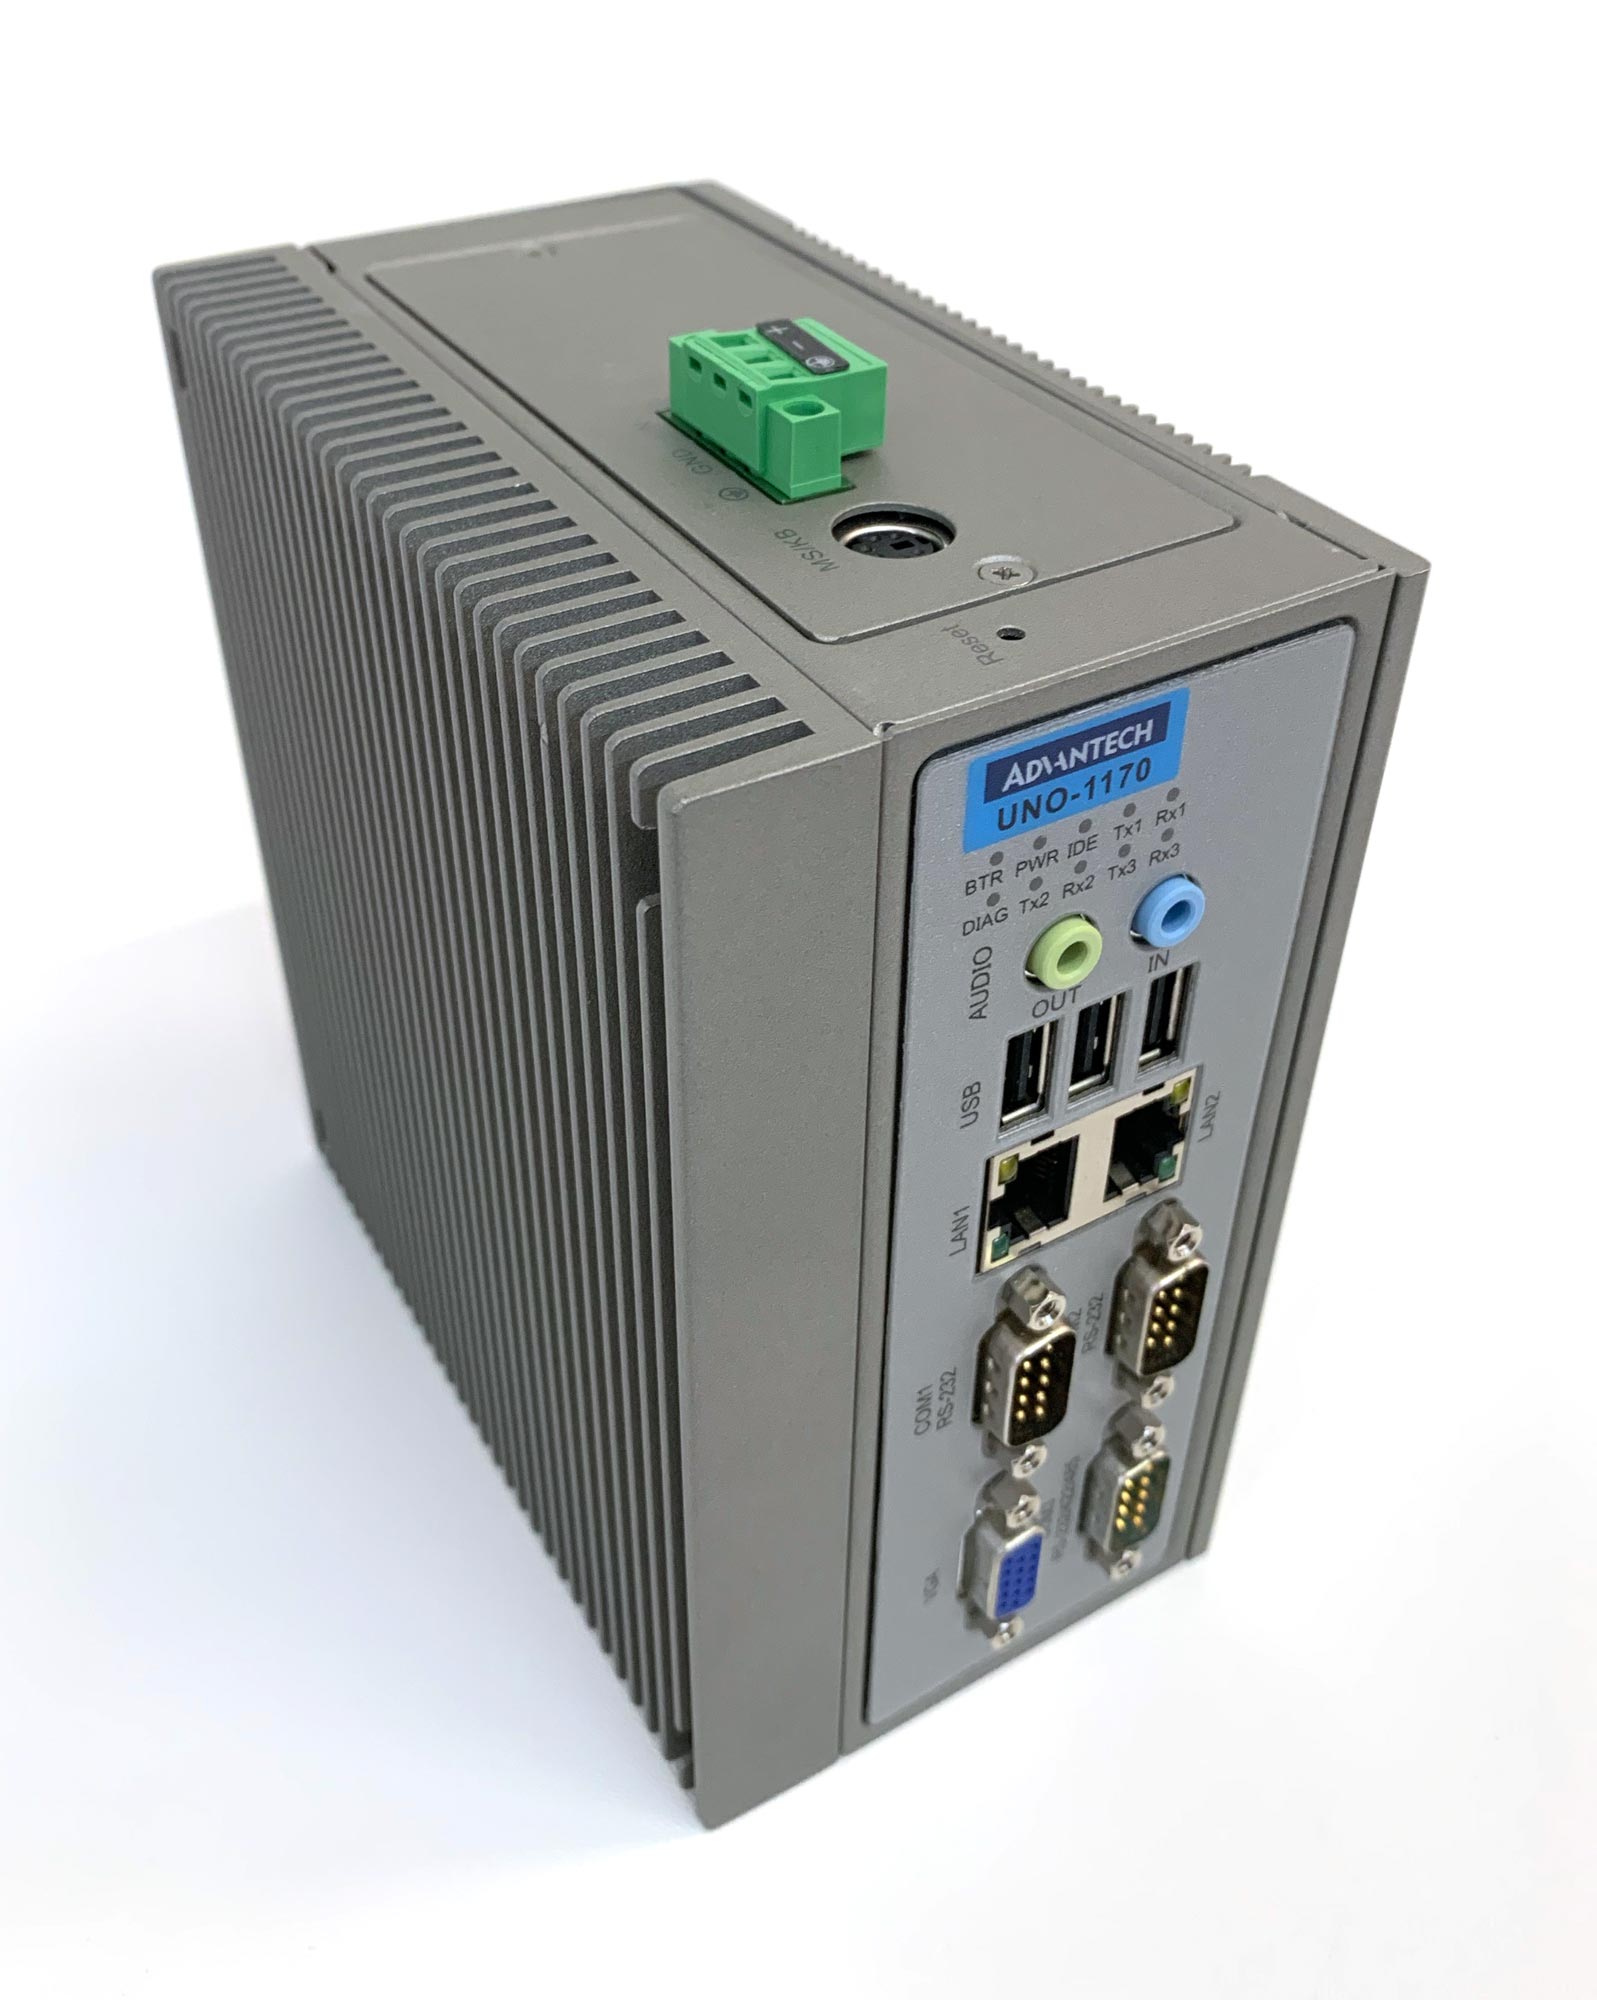 UNO-1170 - Box PC mit Celeron M Prozessor